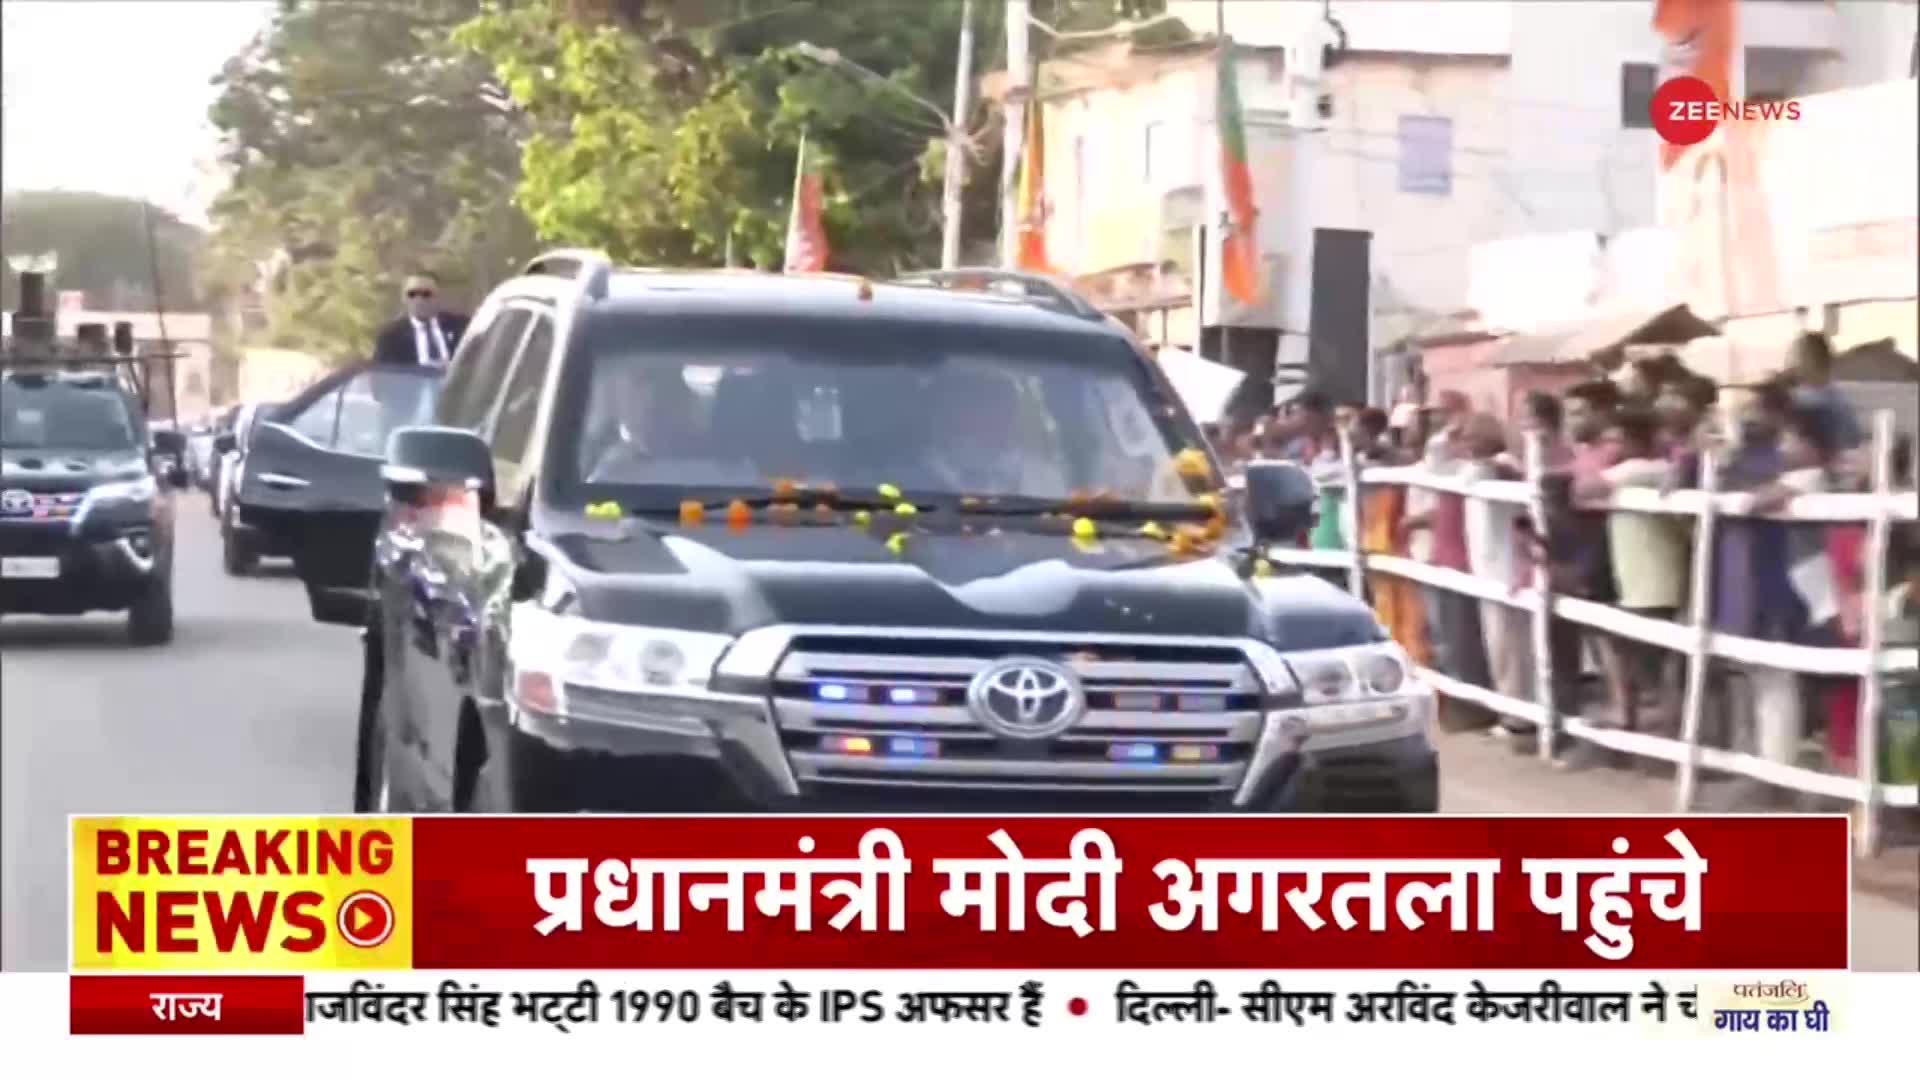 त्रिपुरा पहुंचे PM Modi, राजधानी अगरतला में रोड़ शो के दौरान लोगों का जमावड़ा